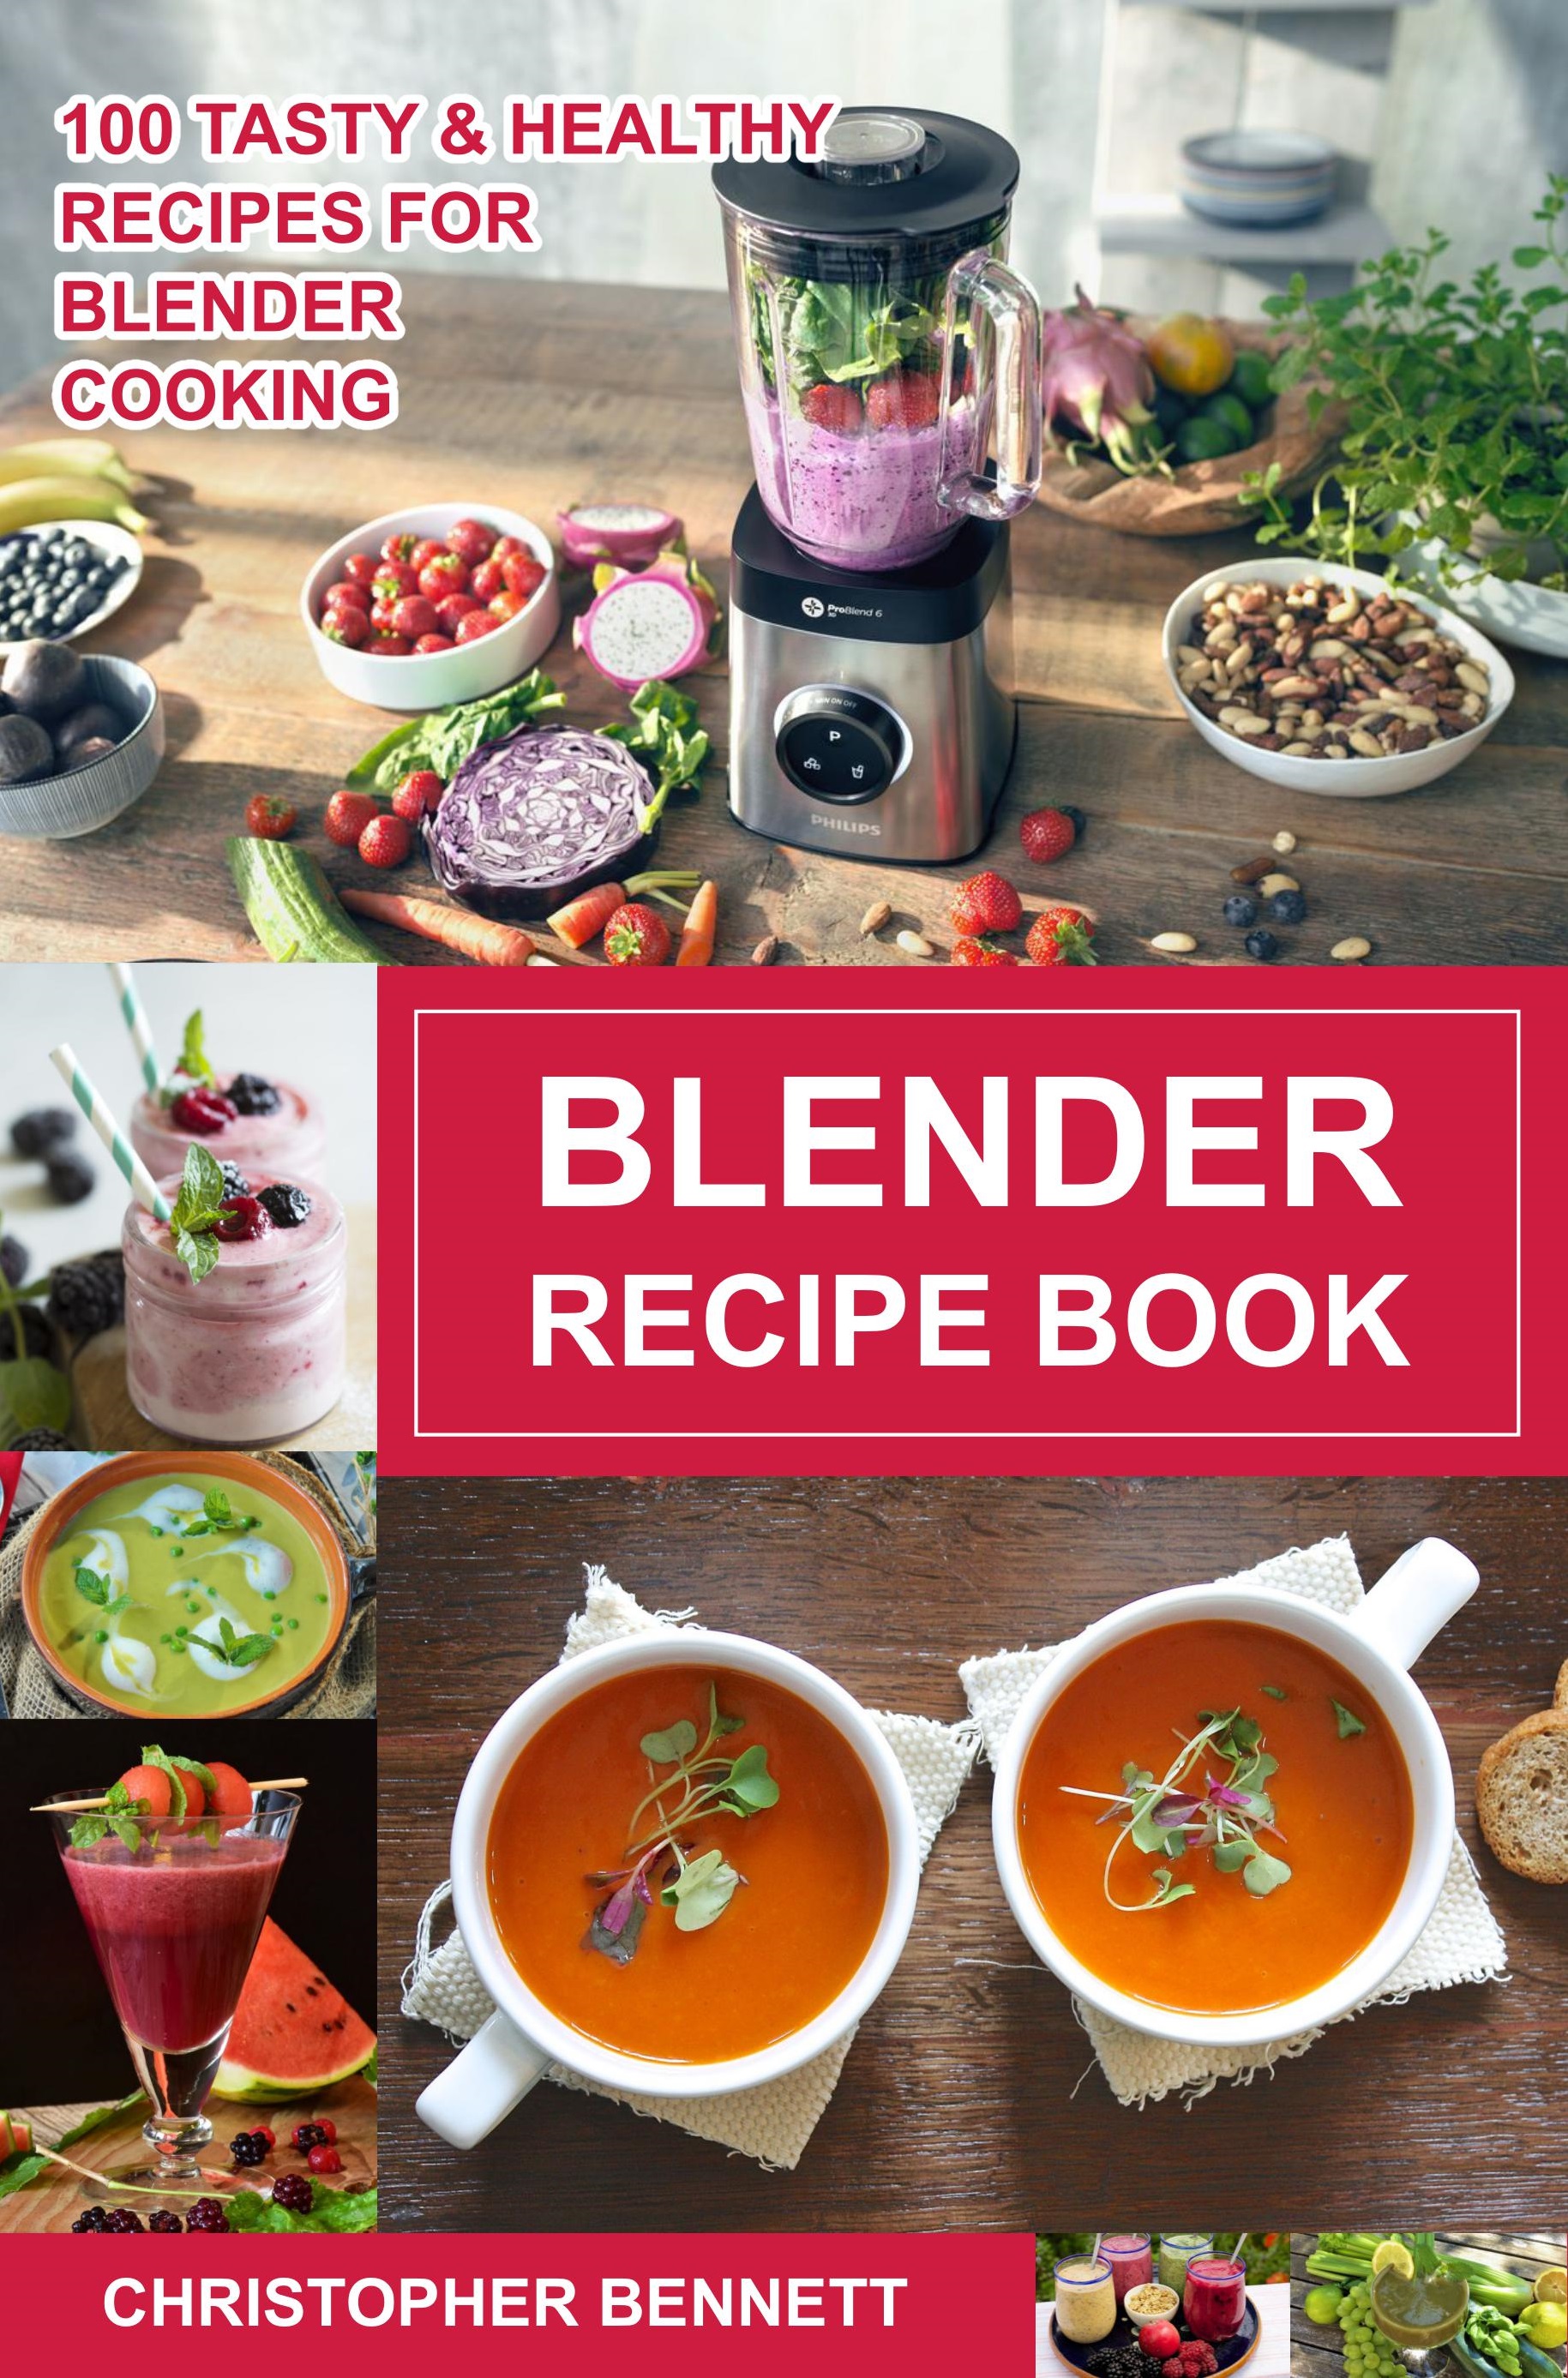 FREE: Blender Recipe Book by Christopher Bennett